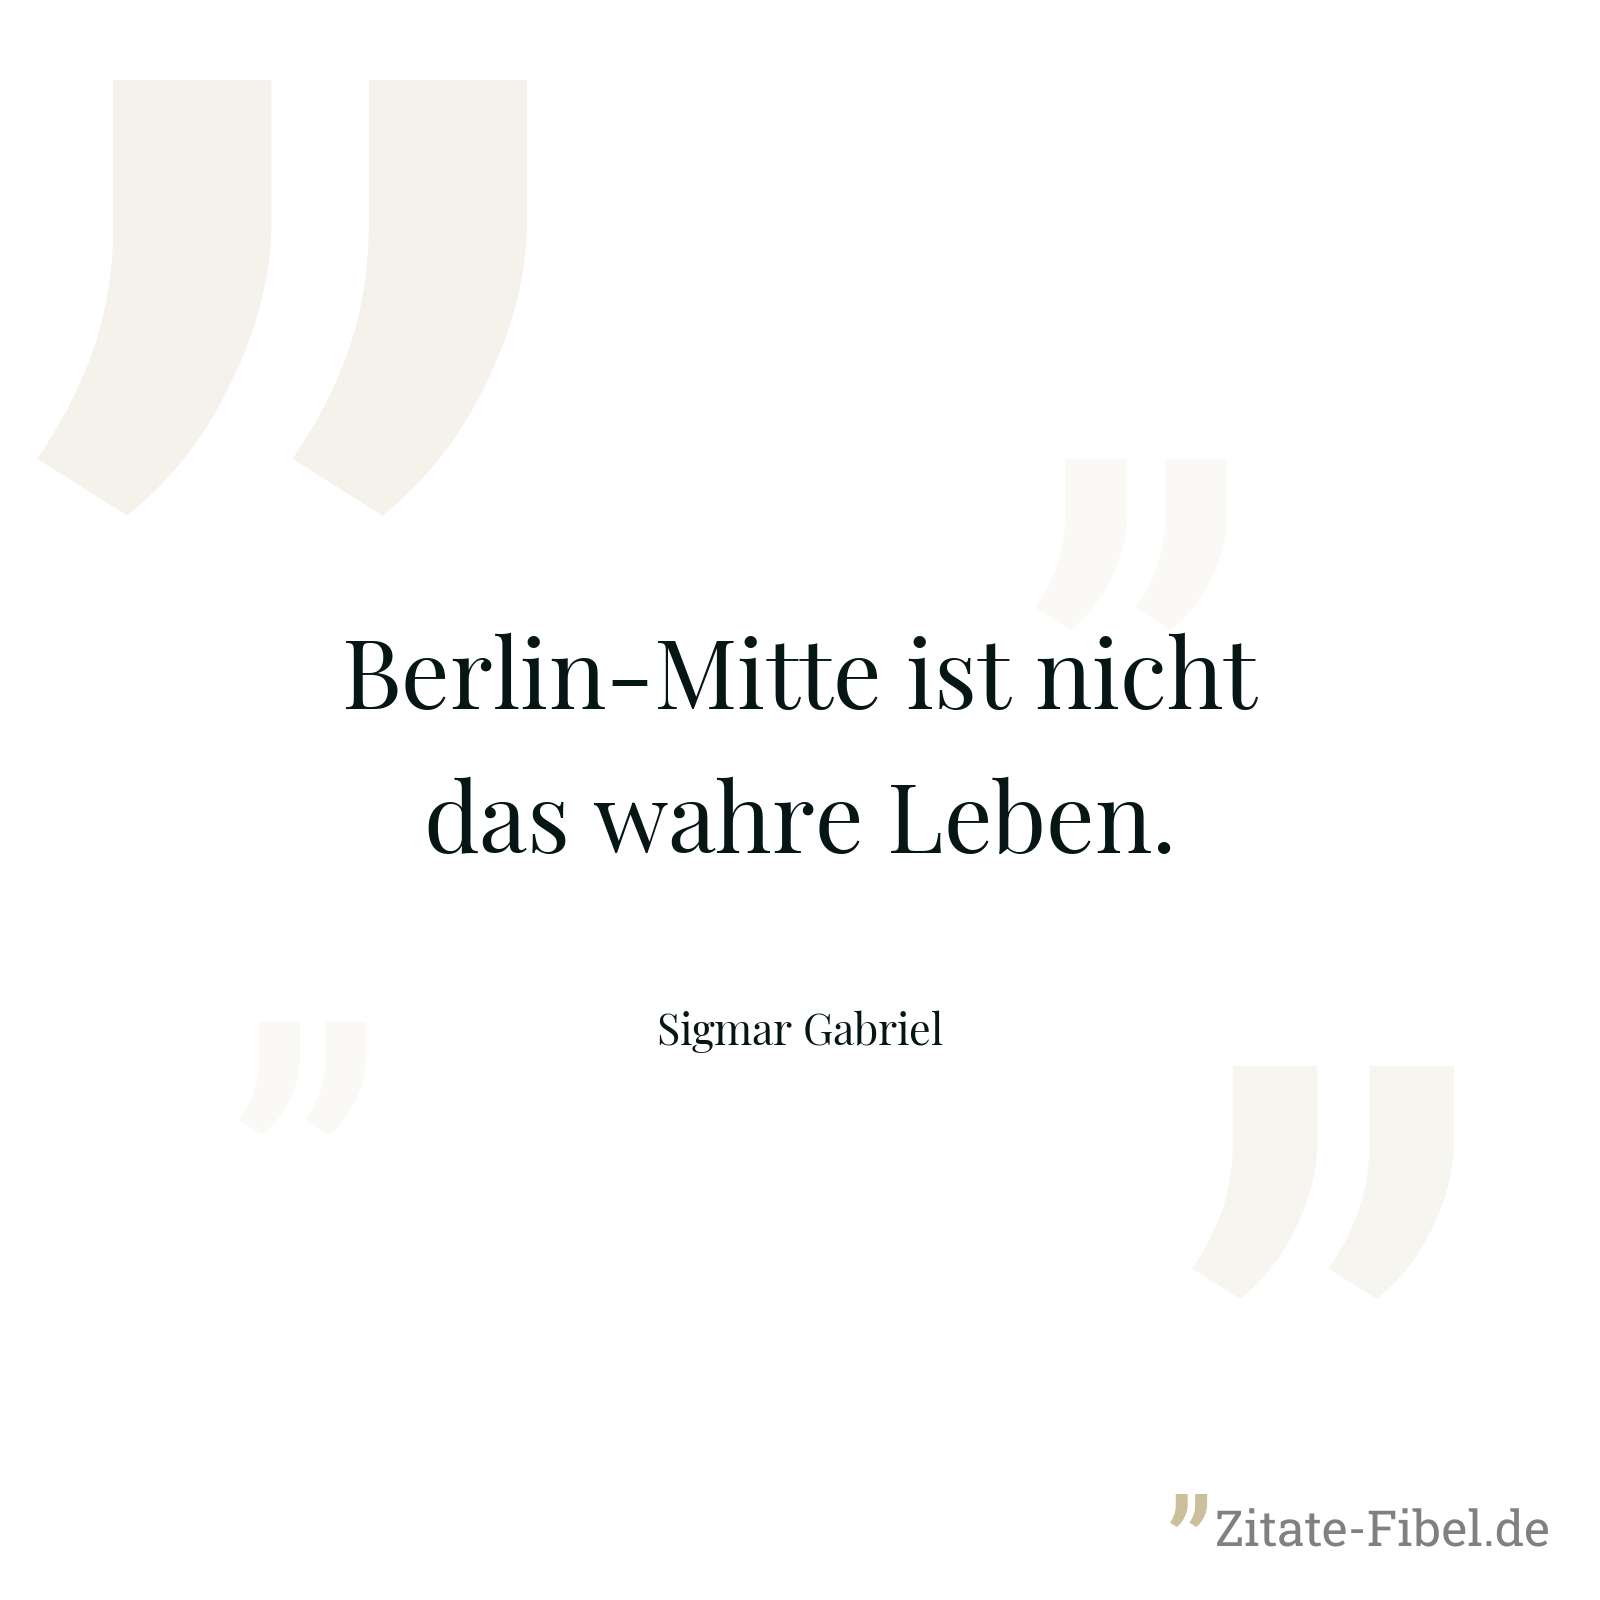 Berlin-Mitte ist nicht das wahre Leben. - Sigmar Gabriel